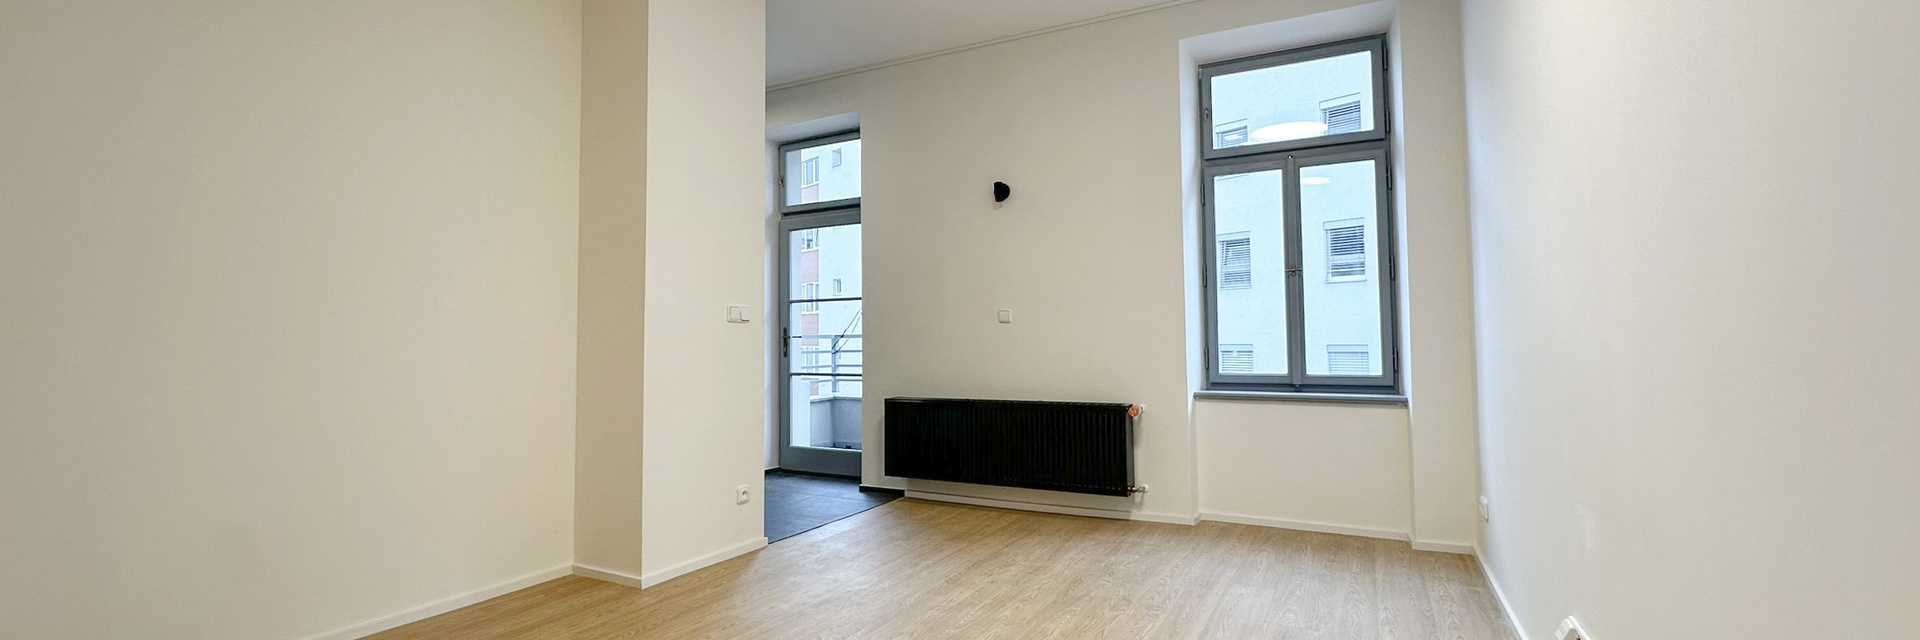 Pronájem apartmánu 1+kk s balkonem, 40 m², Pasáž Koliště